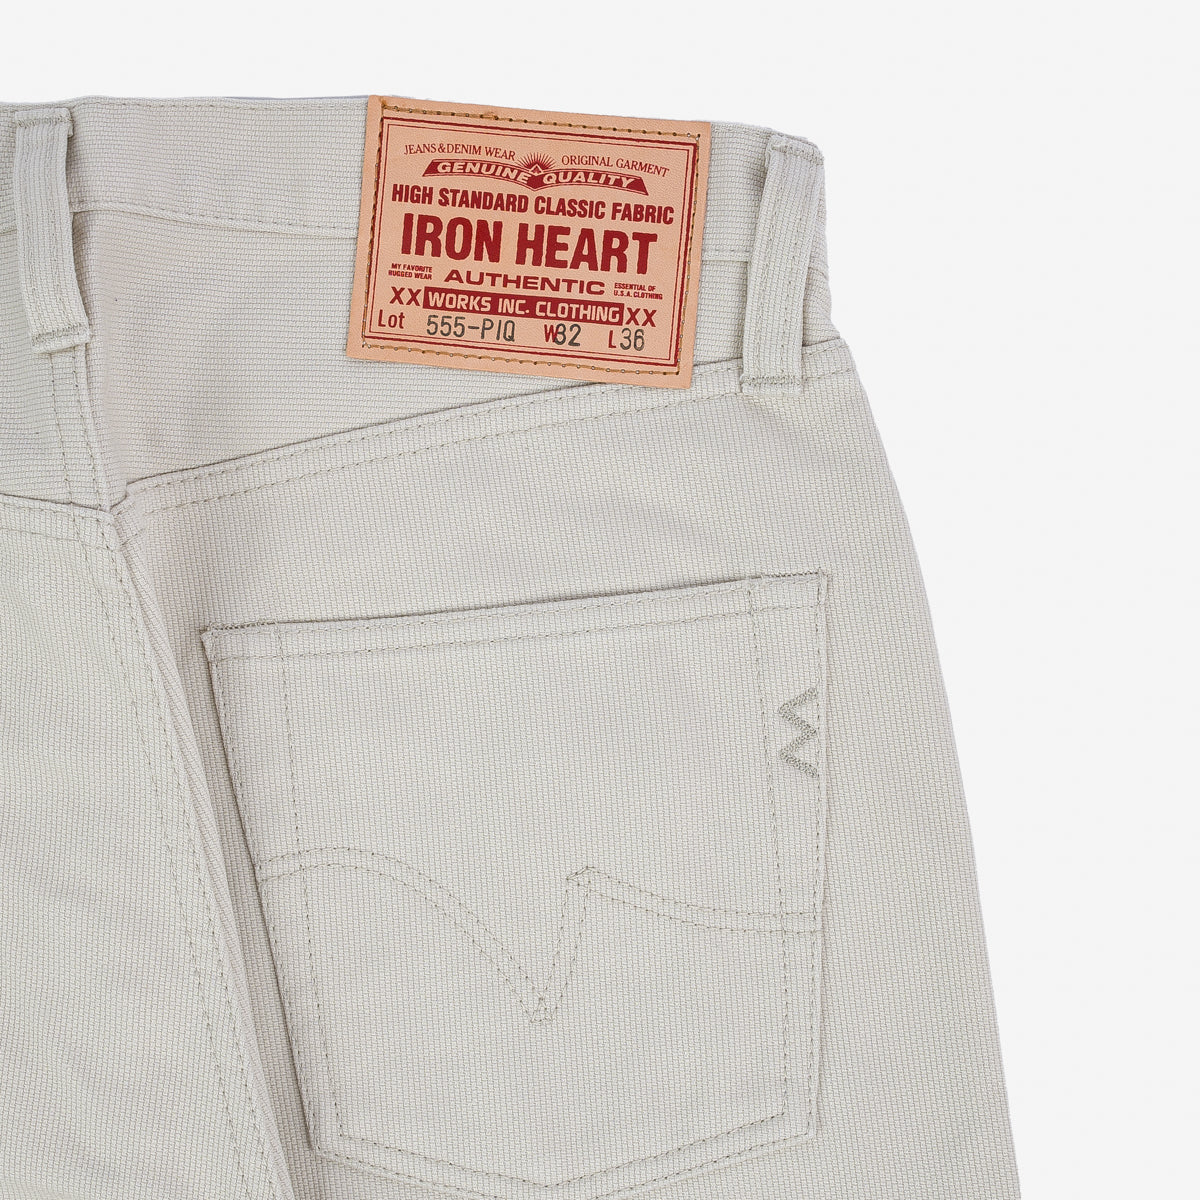 Iron Heart IH-555-PIQ 14oz Cotton Piqué Super Slim Cut Jeans - Ecru